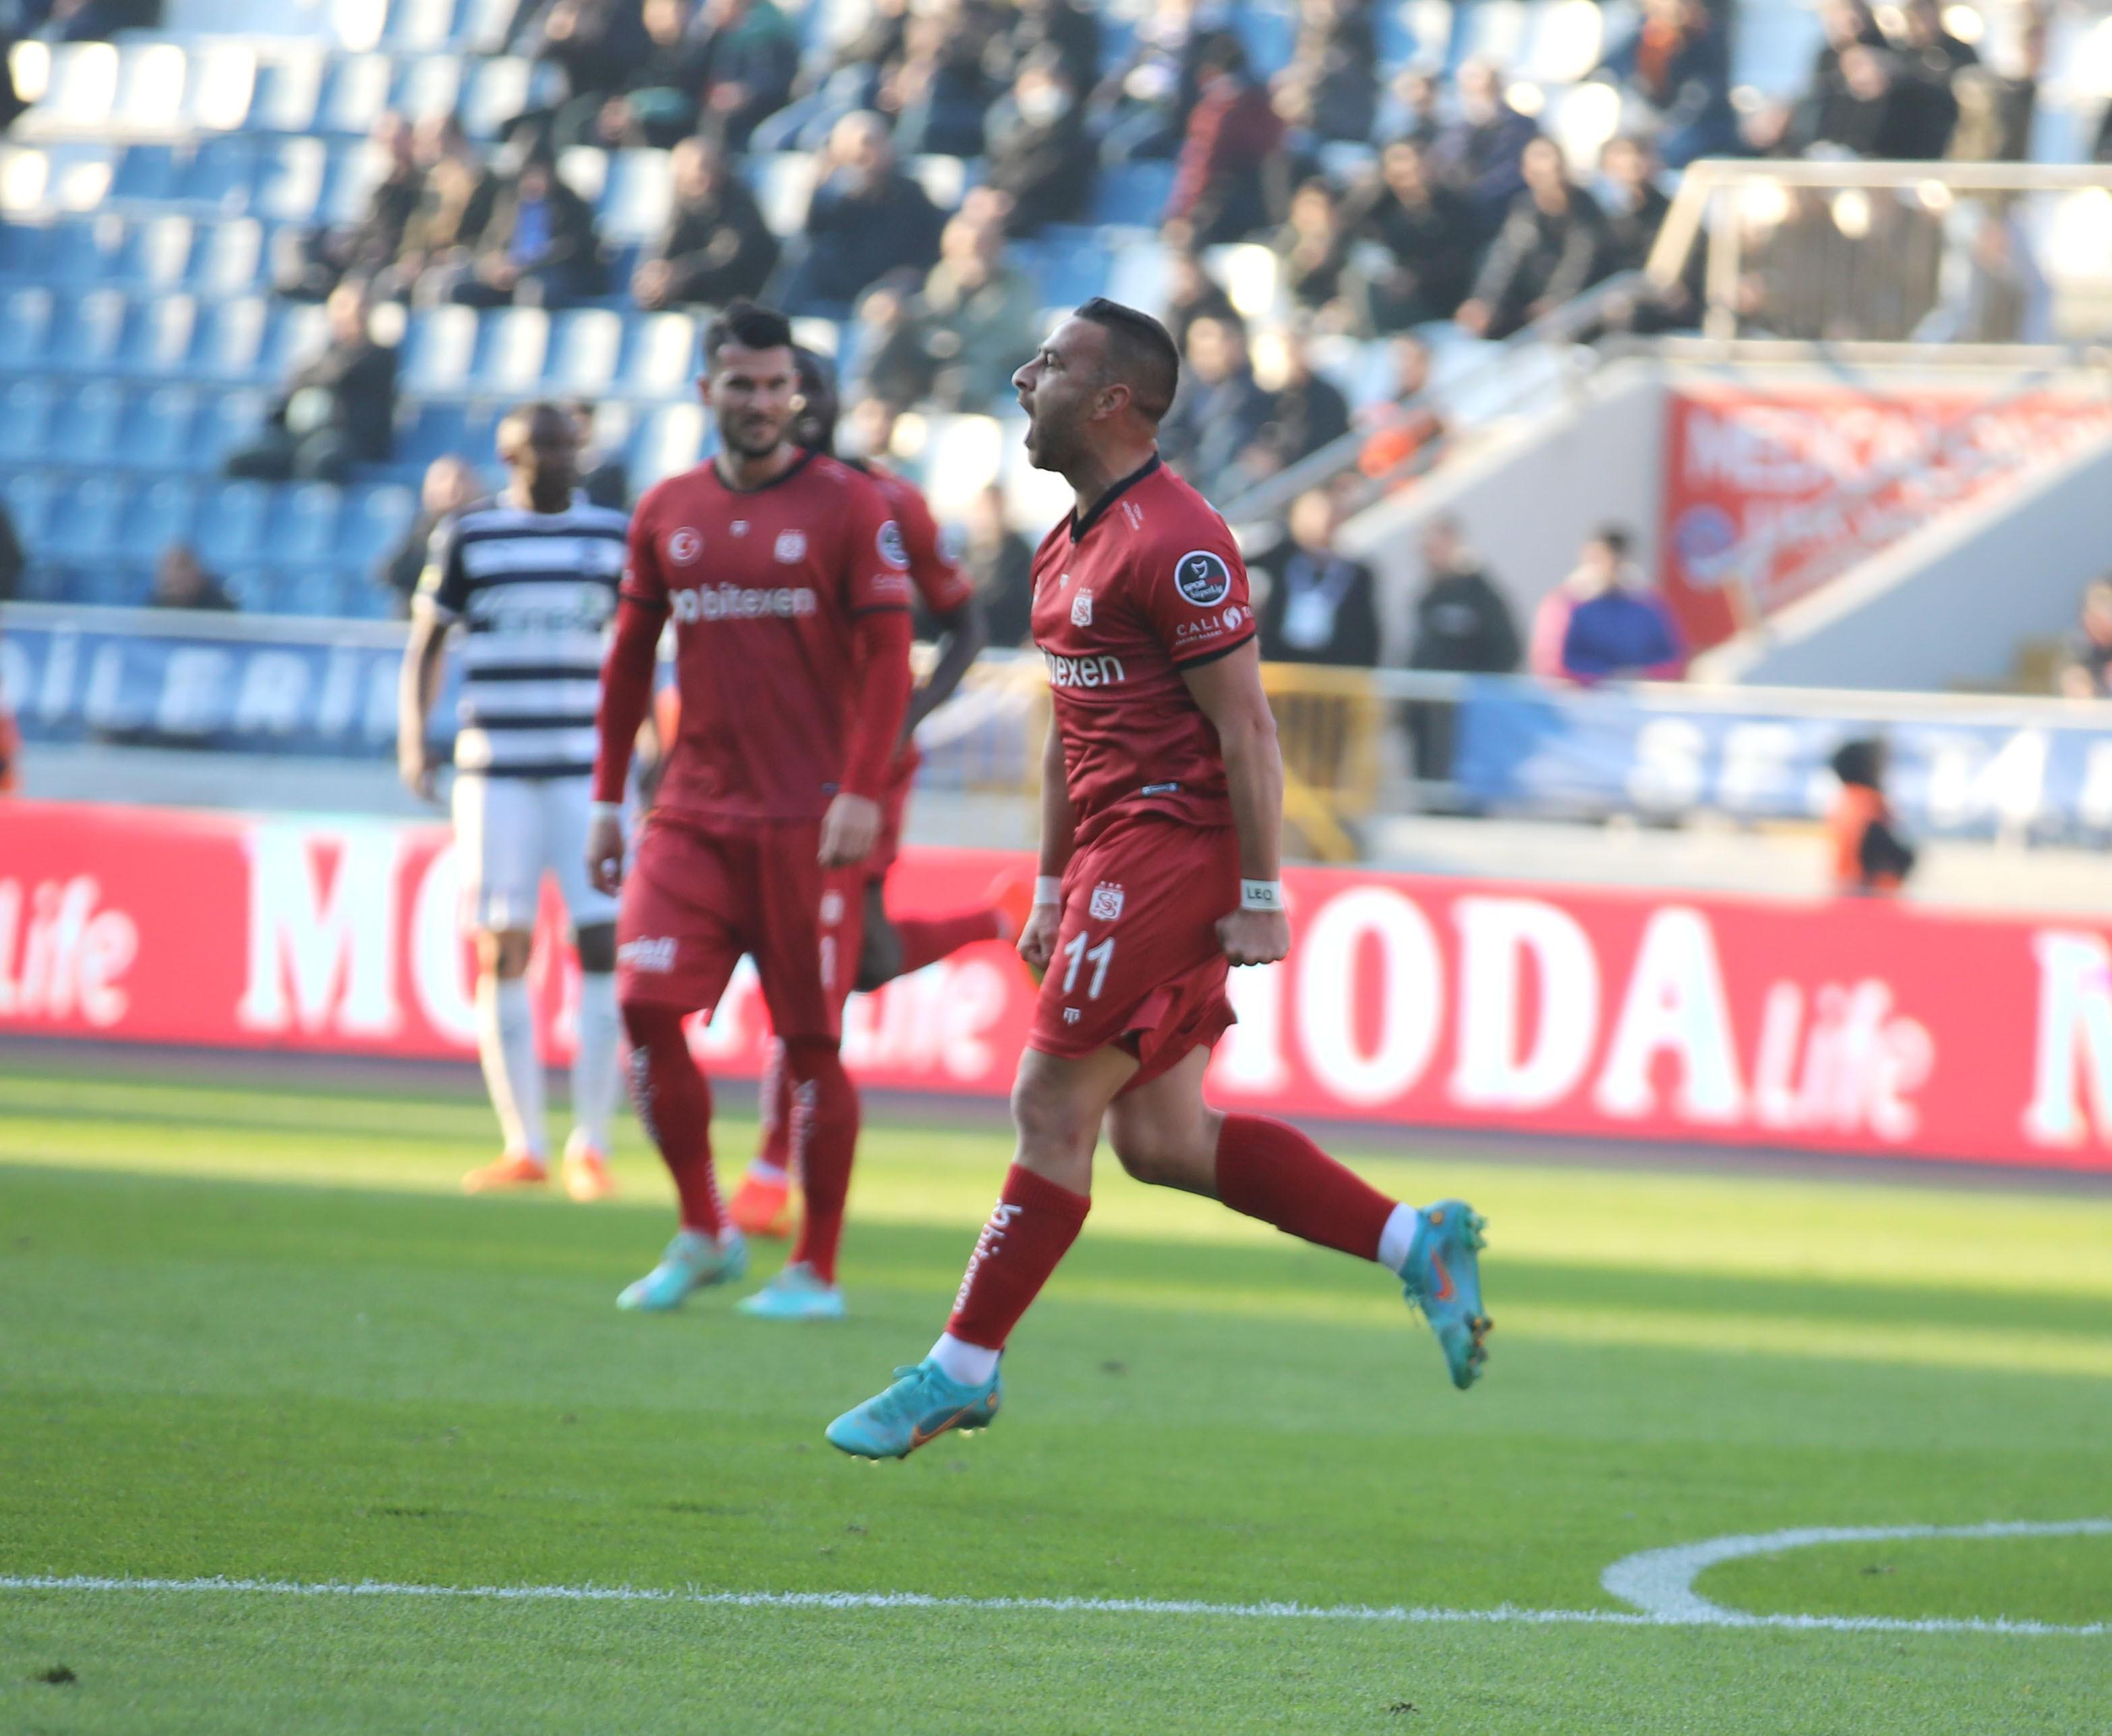 Sivassporun yıldızları gollere devam ediyor